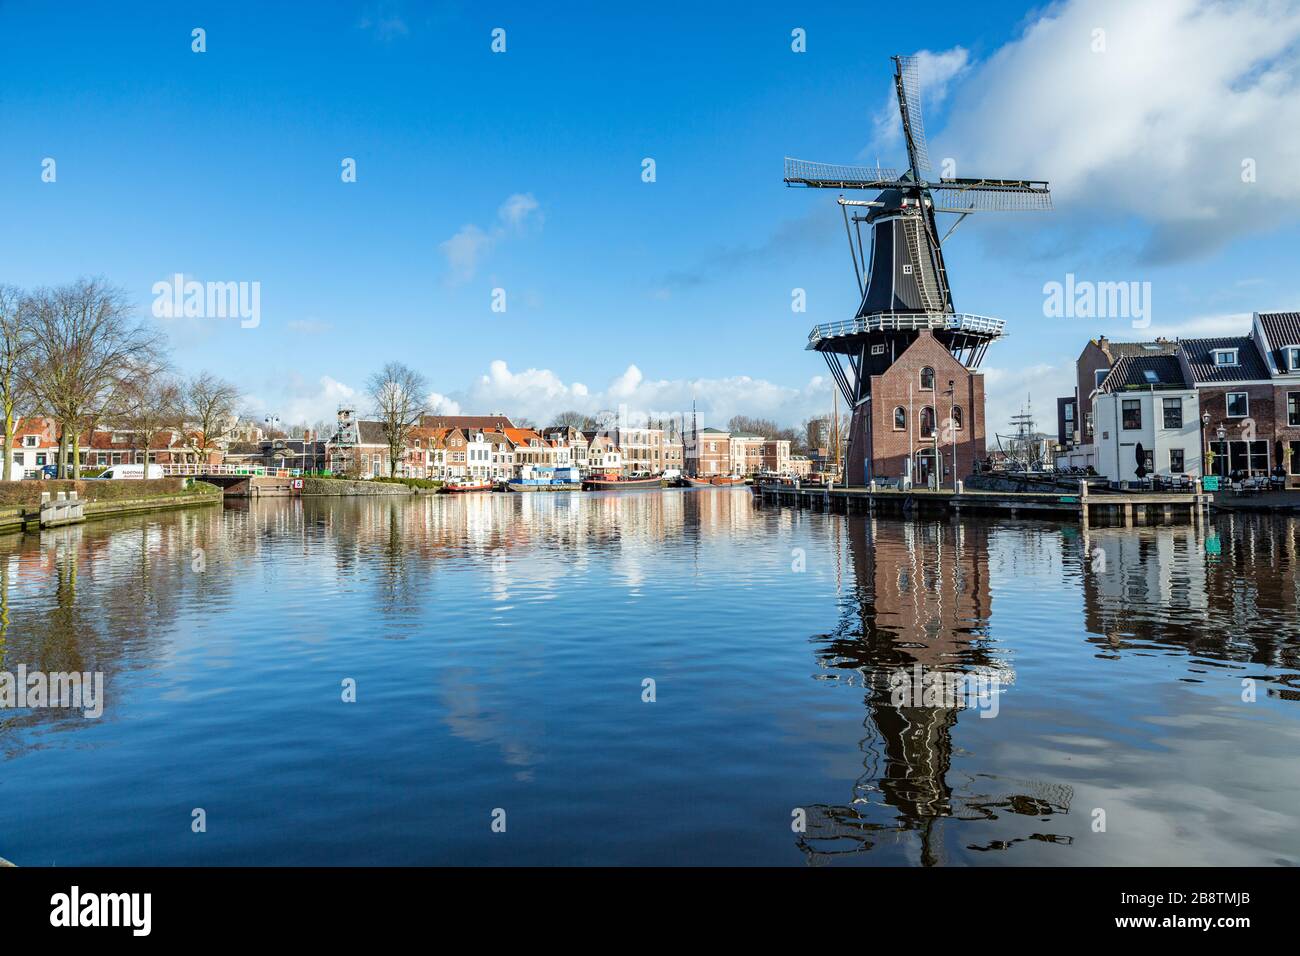 De Adriaan è un mulino a vento a Haarlem, Olanda, che bruciò nel 1932 e fu ricostruito nel 2002. Il mulino a vento originale risale al 1779. Foto Stock